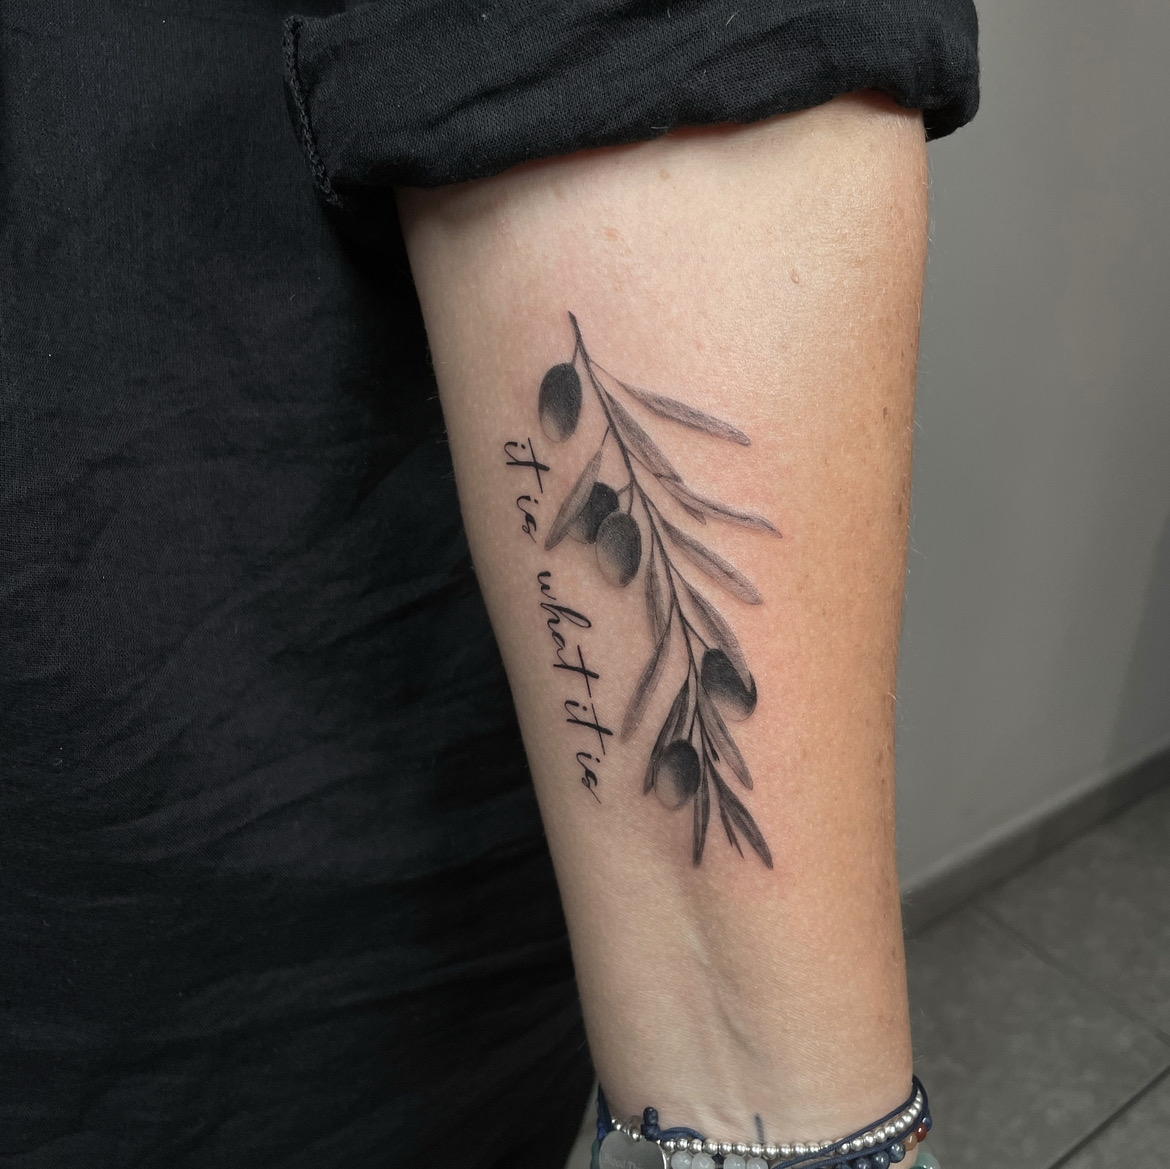 TattooGigs tattoo 1 from Dominika B